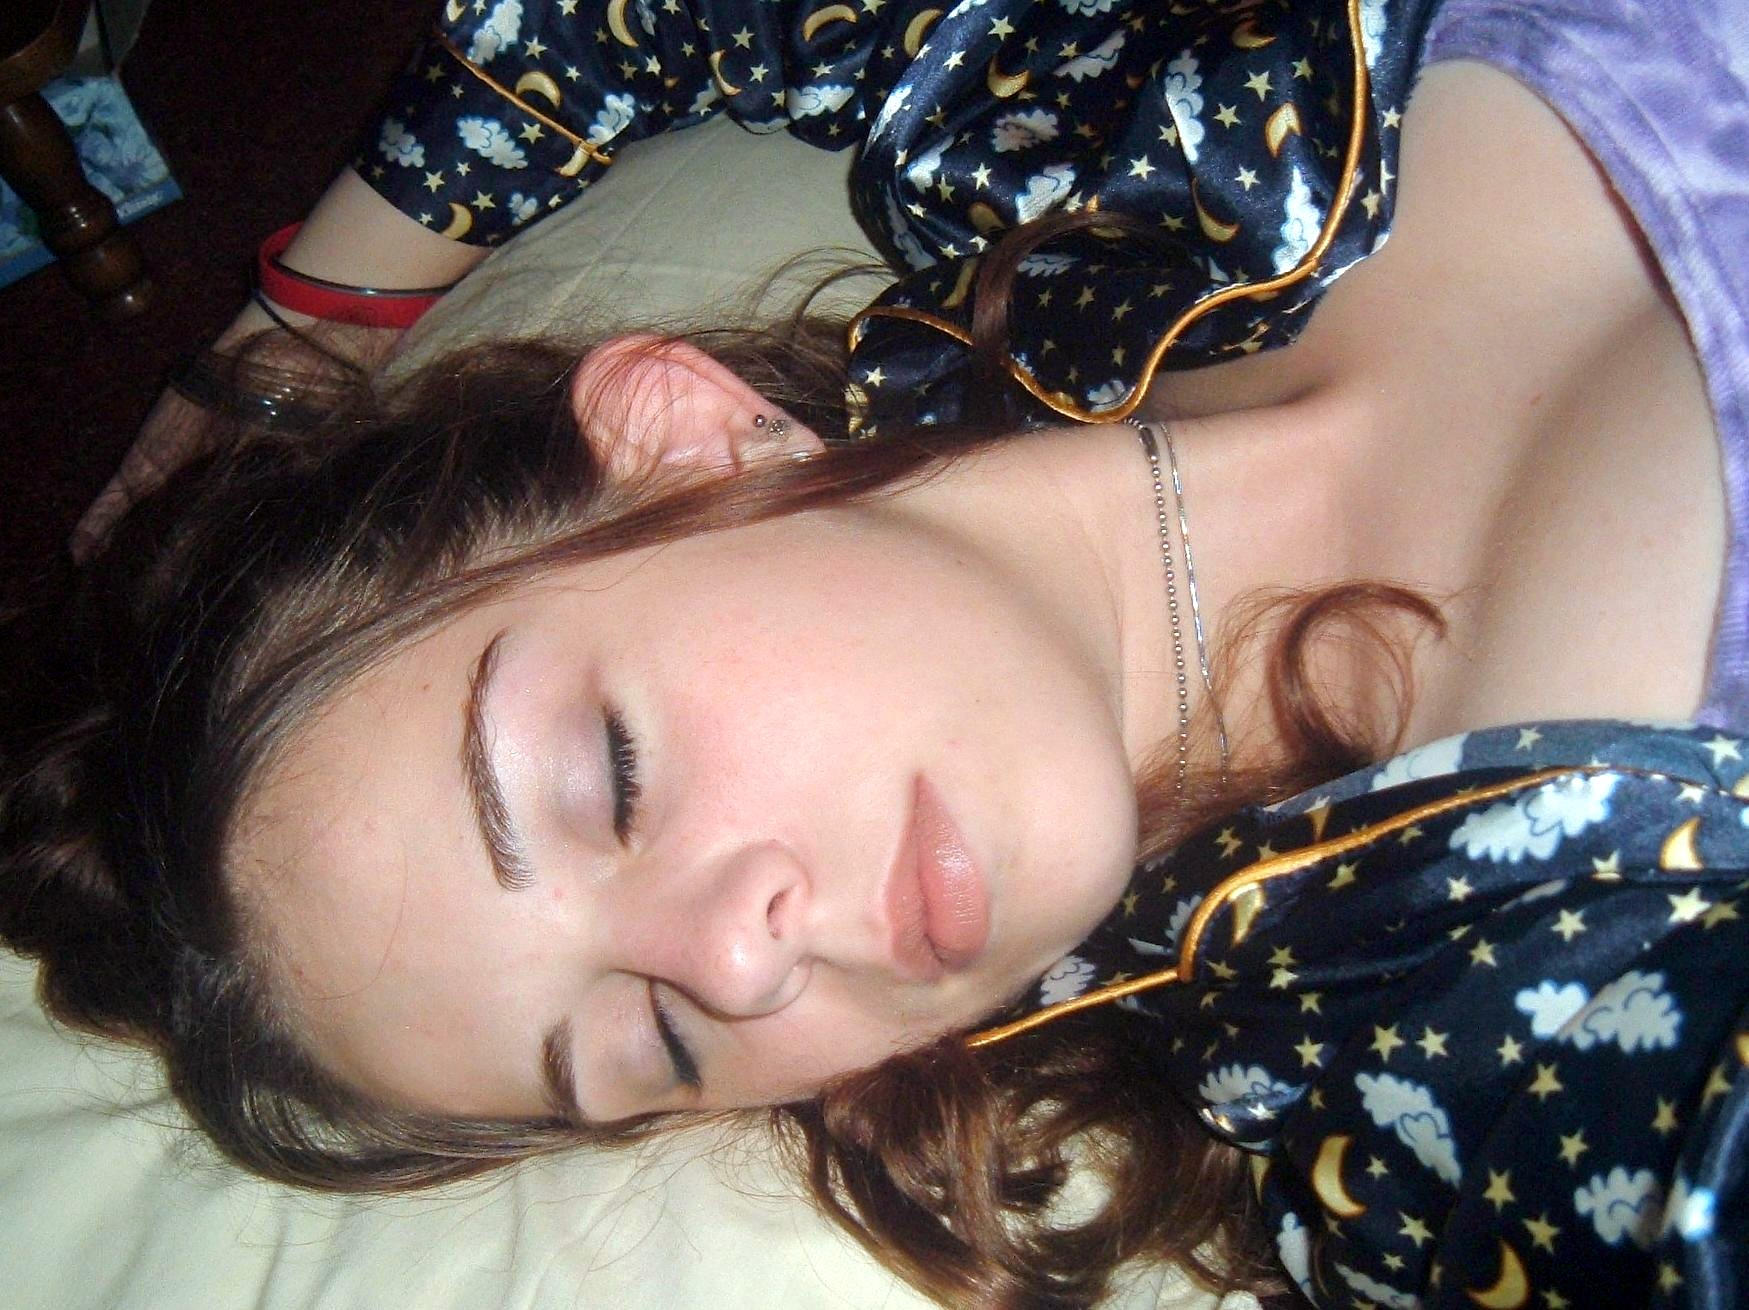 Teen Sleep Problems Tied 62